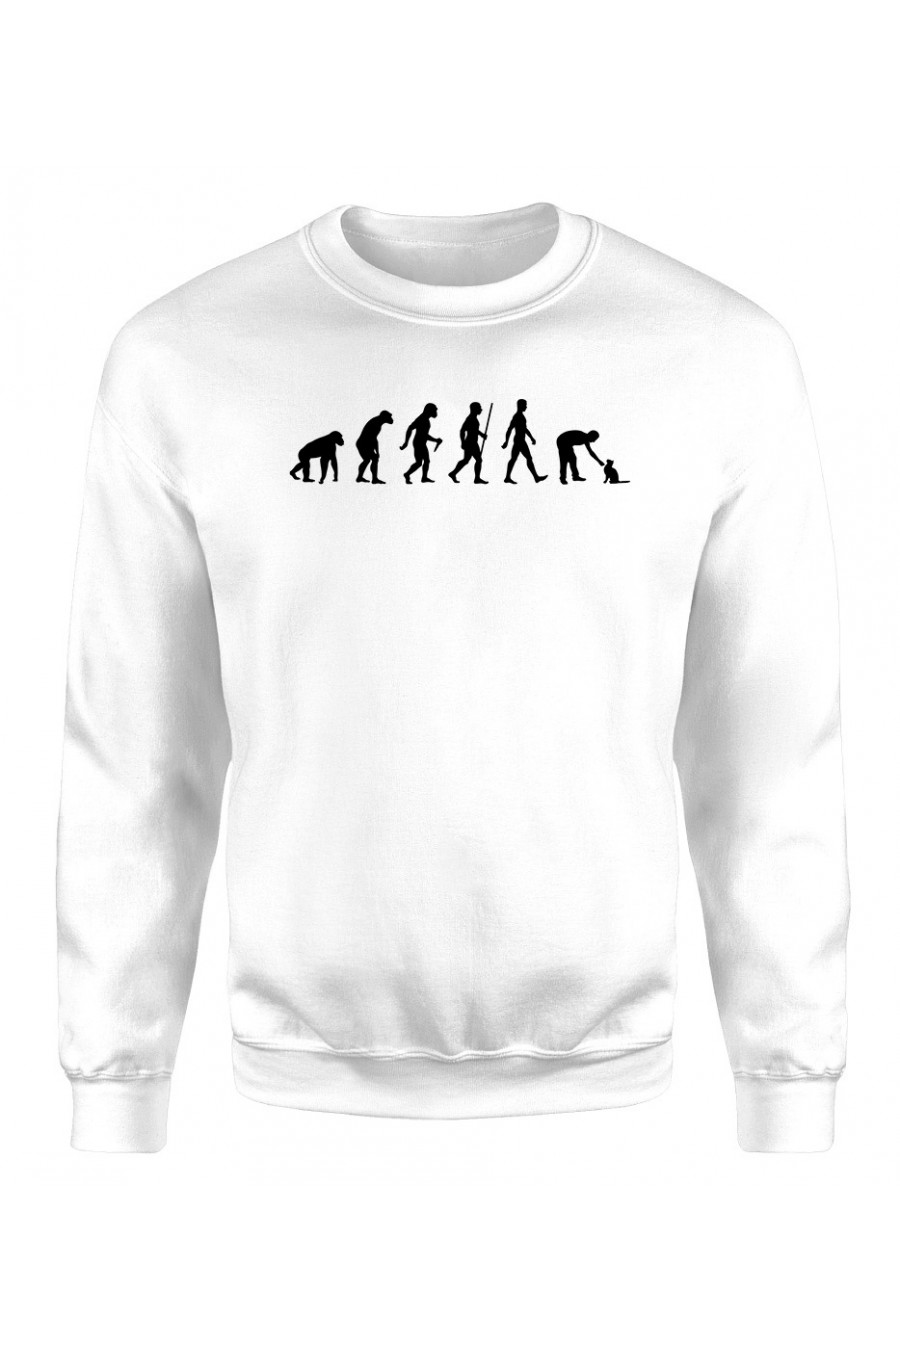 Bluza Klasyczna Damska Ewolucja Człowieka